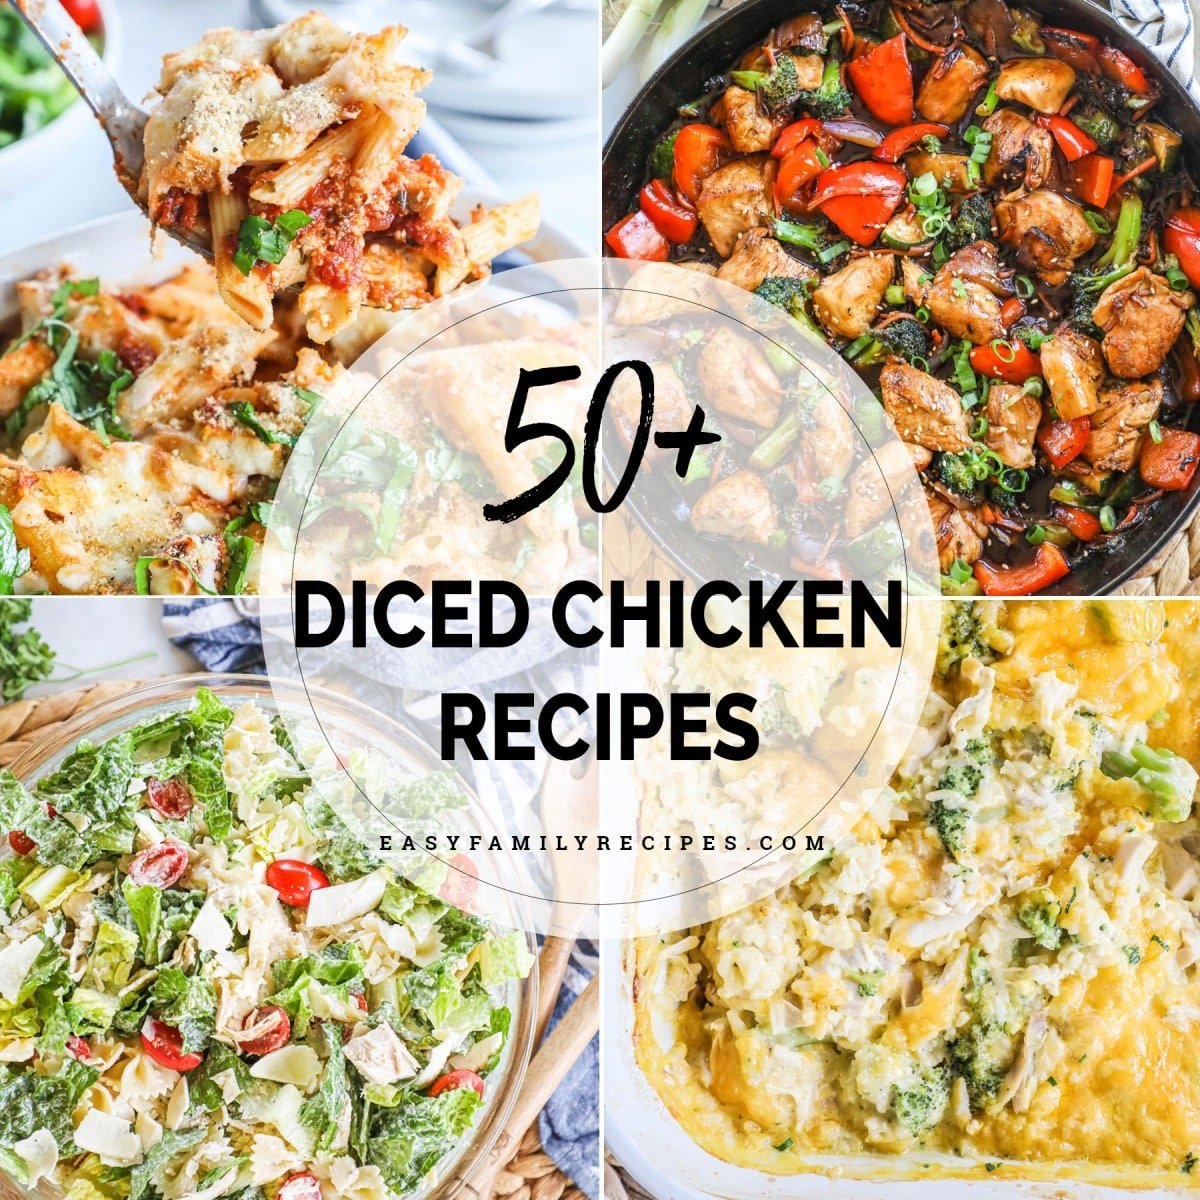 50+ Diced Chicken Recipes